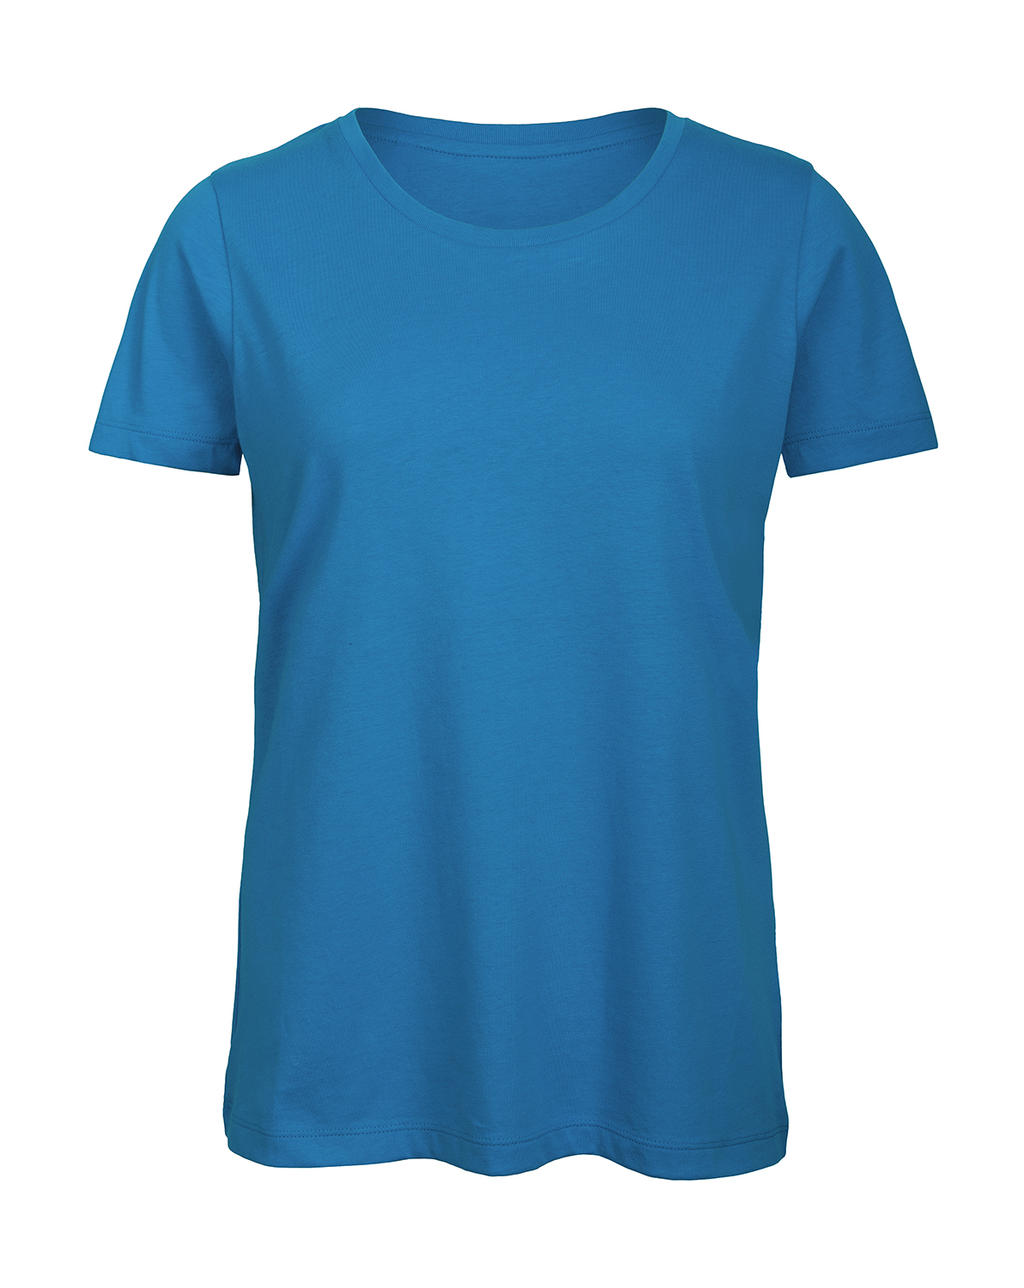 Tričko dámské B&C Jersey - světle modré, M